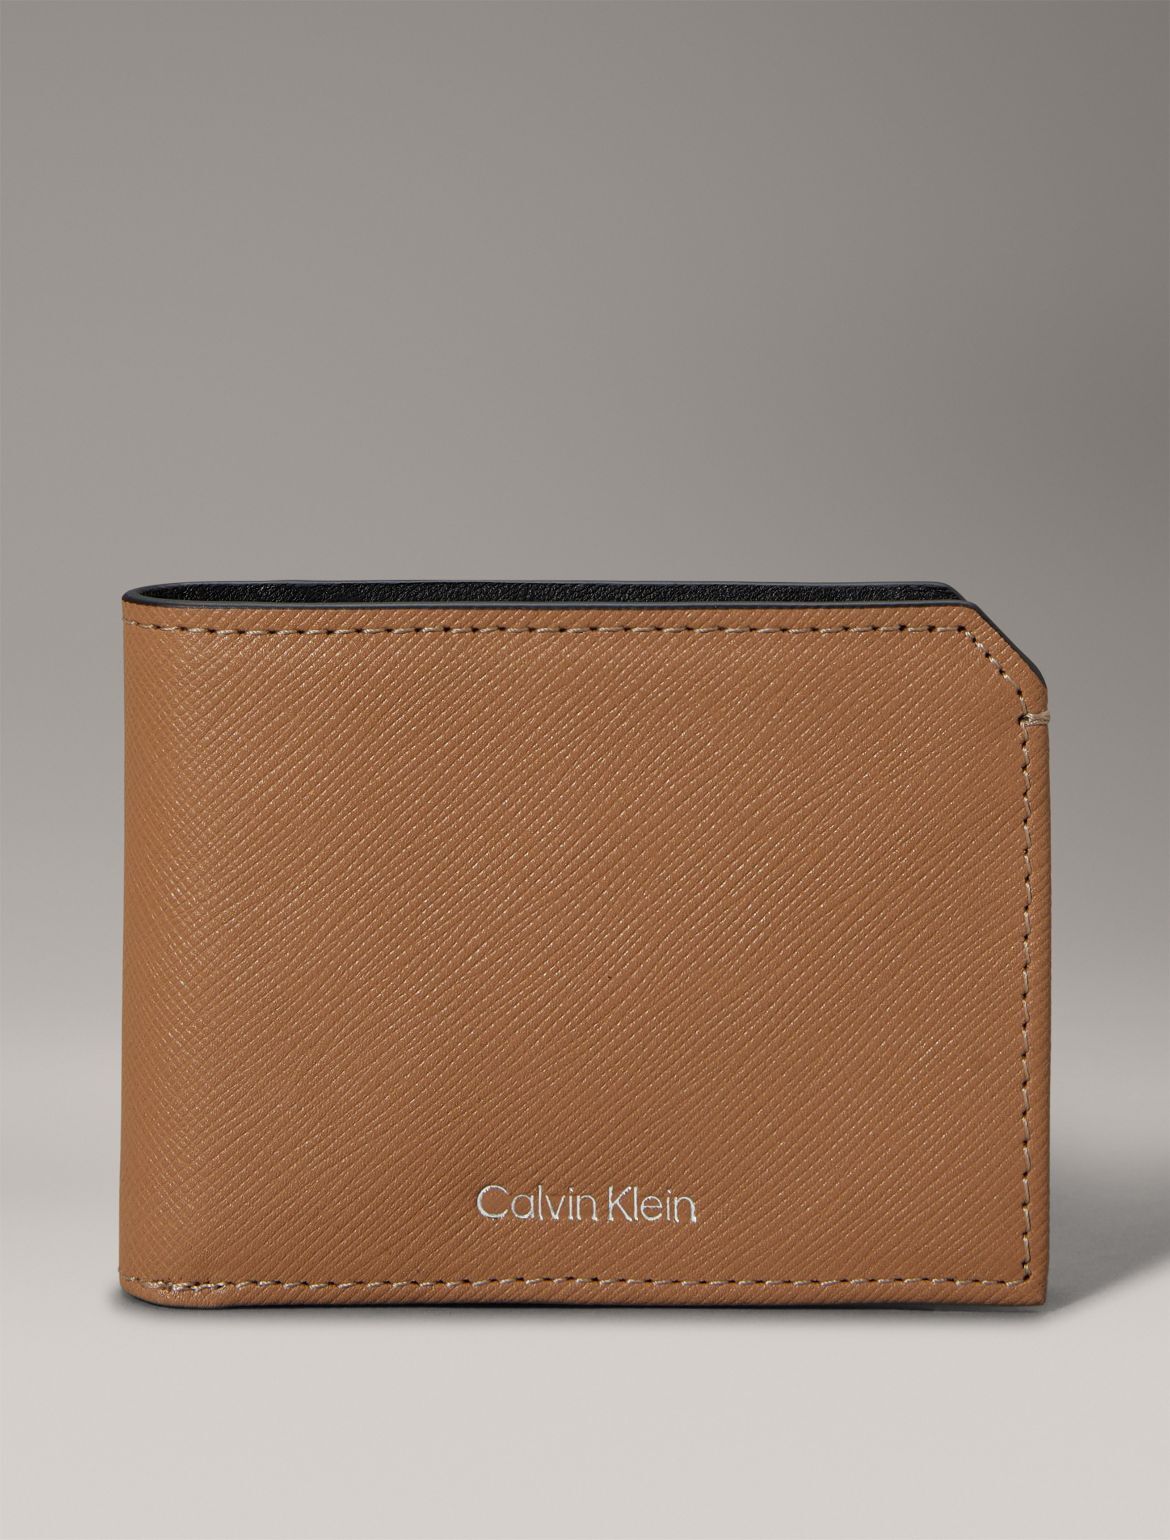 Calvin Klein Saffiano Leather Slim Bifold Wallet - Brown